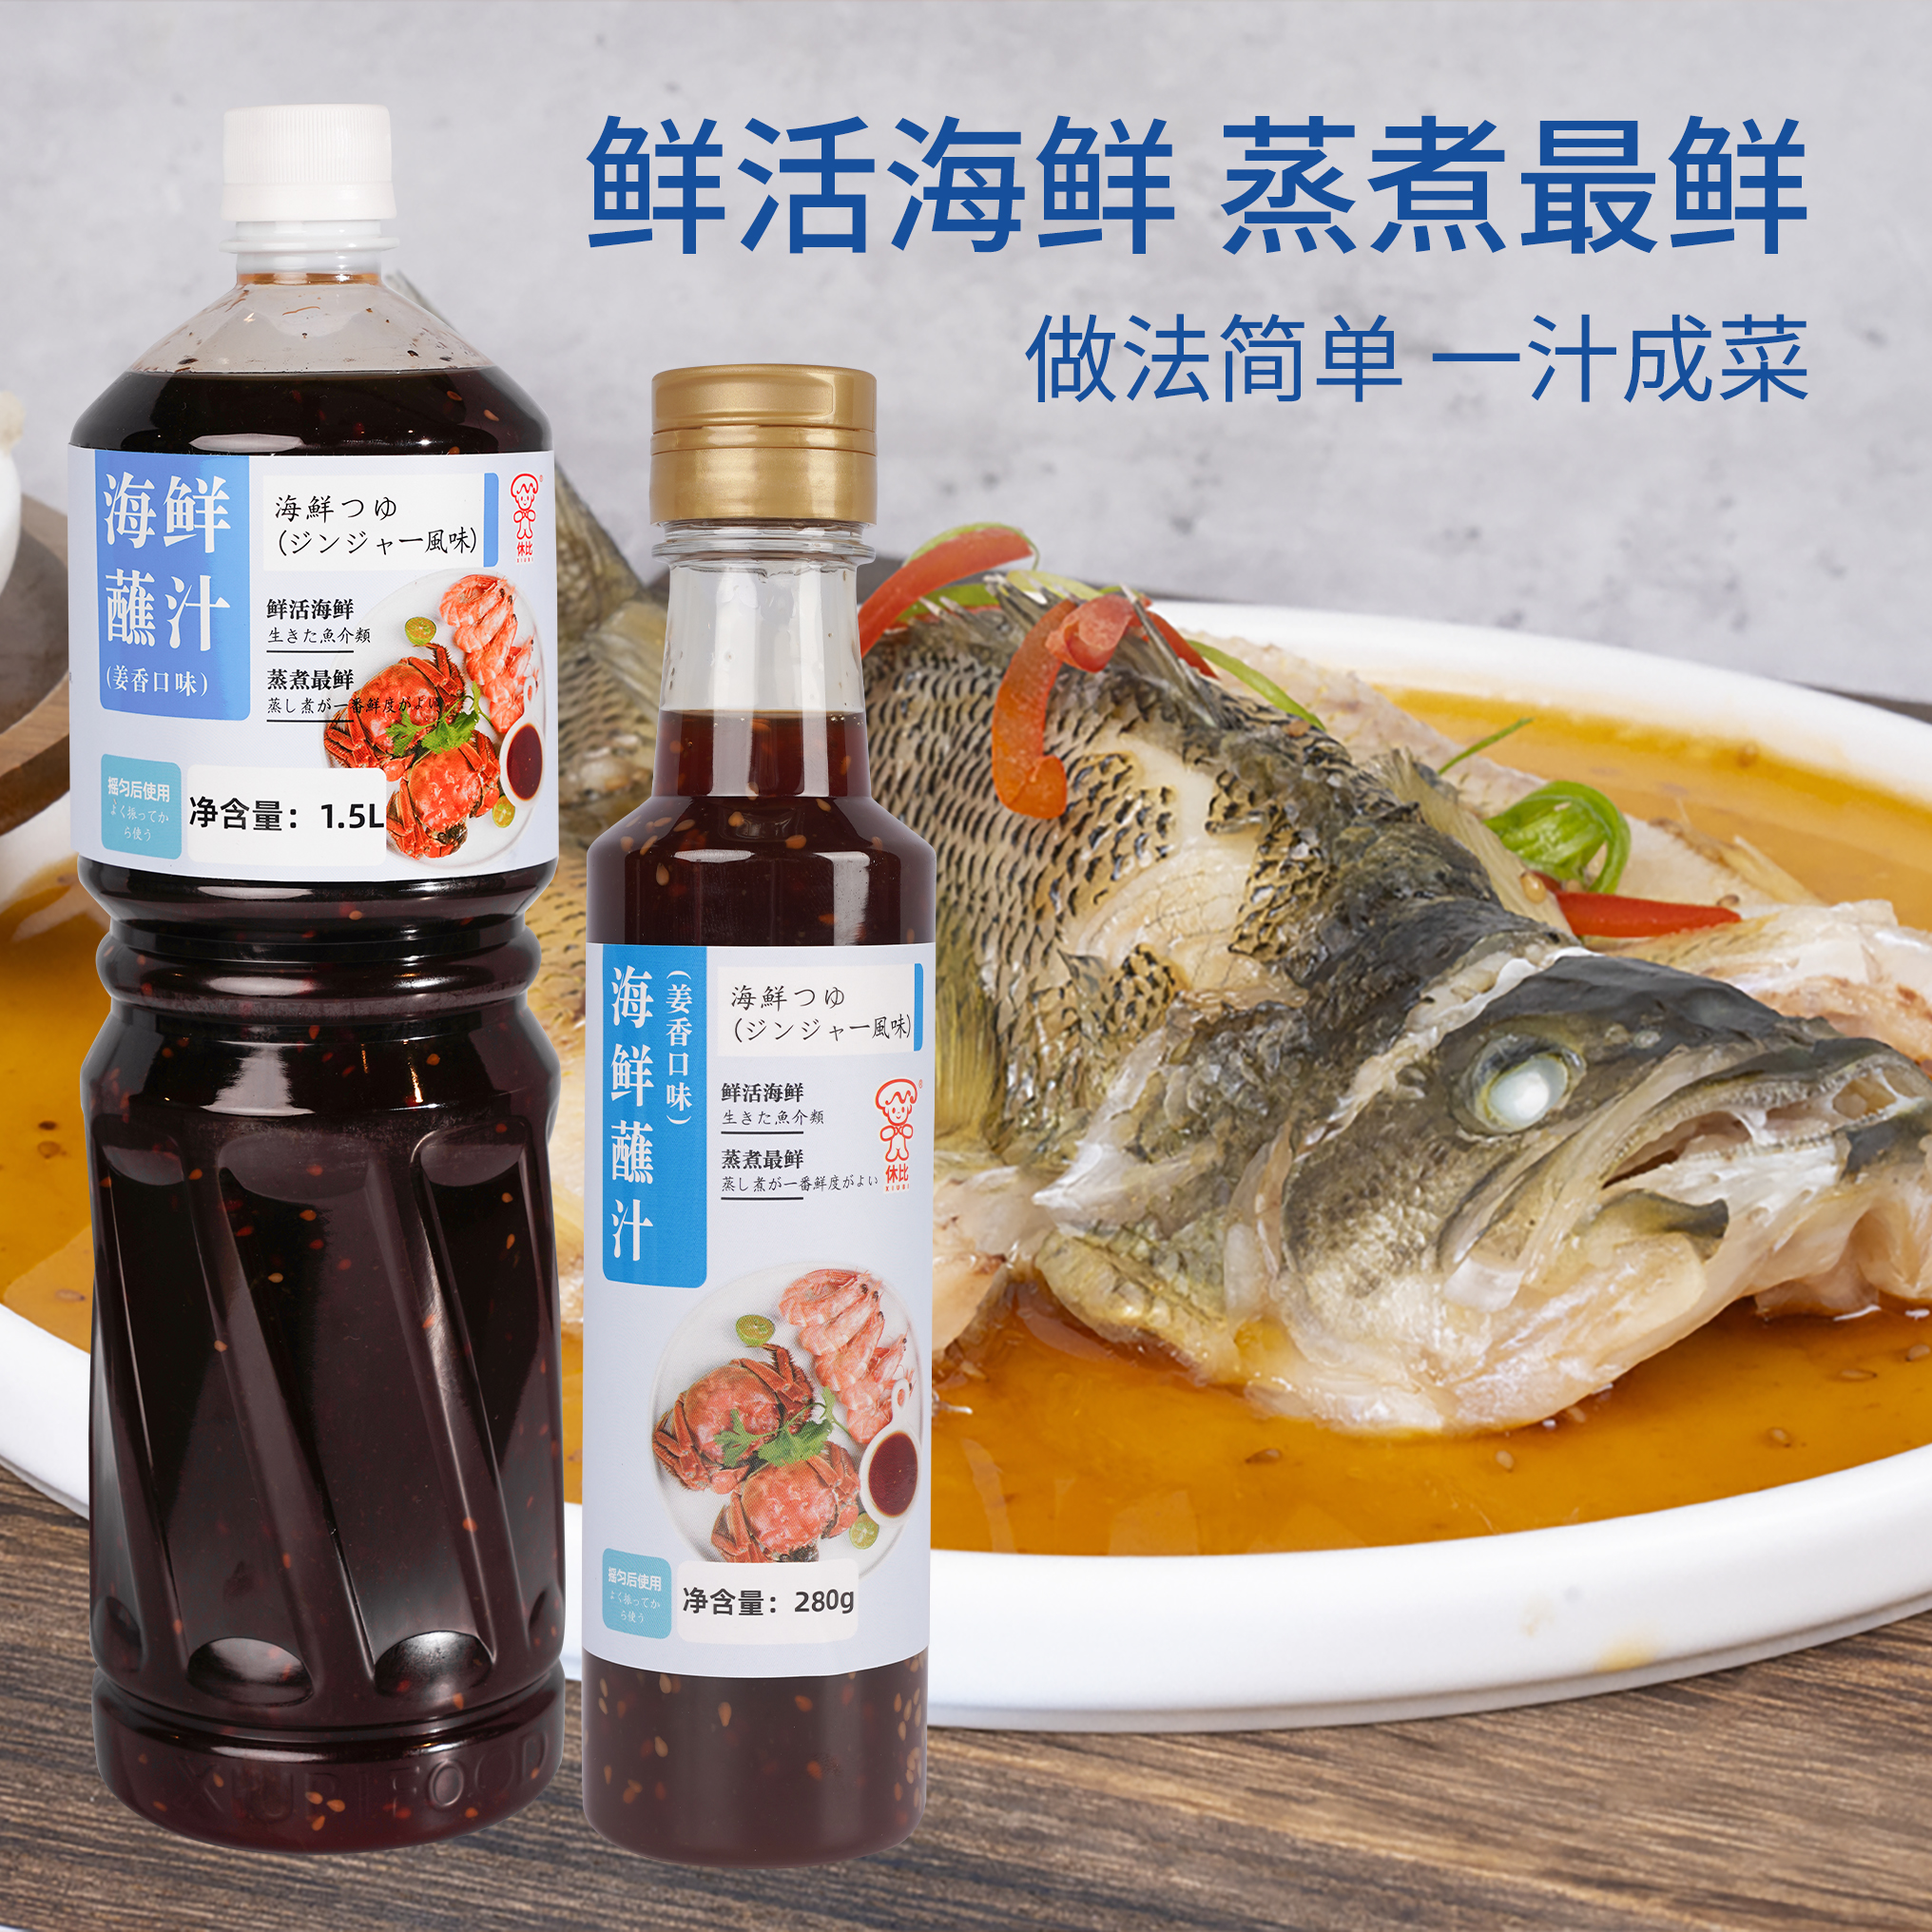 休比姜香蘸汁麻辣海鲜捞汁1.5L小瓶凉拌虾鸡爪调料蘸汁海鲜调味料